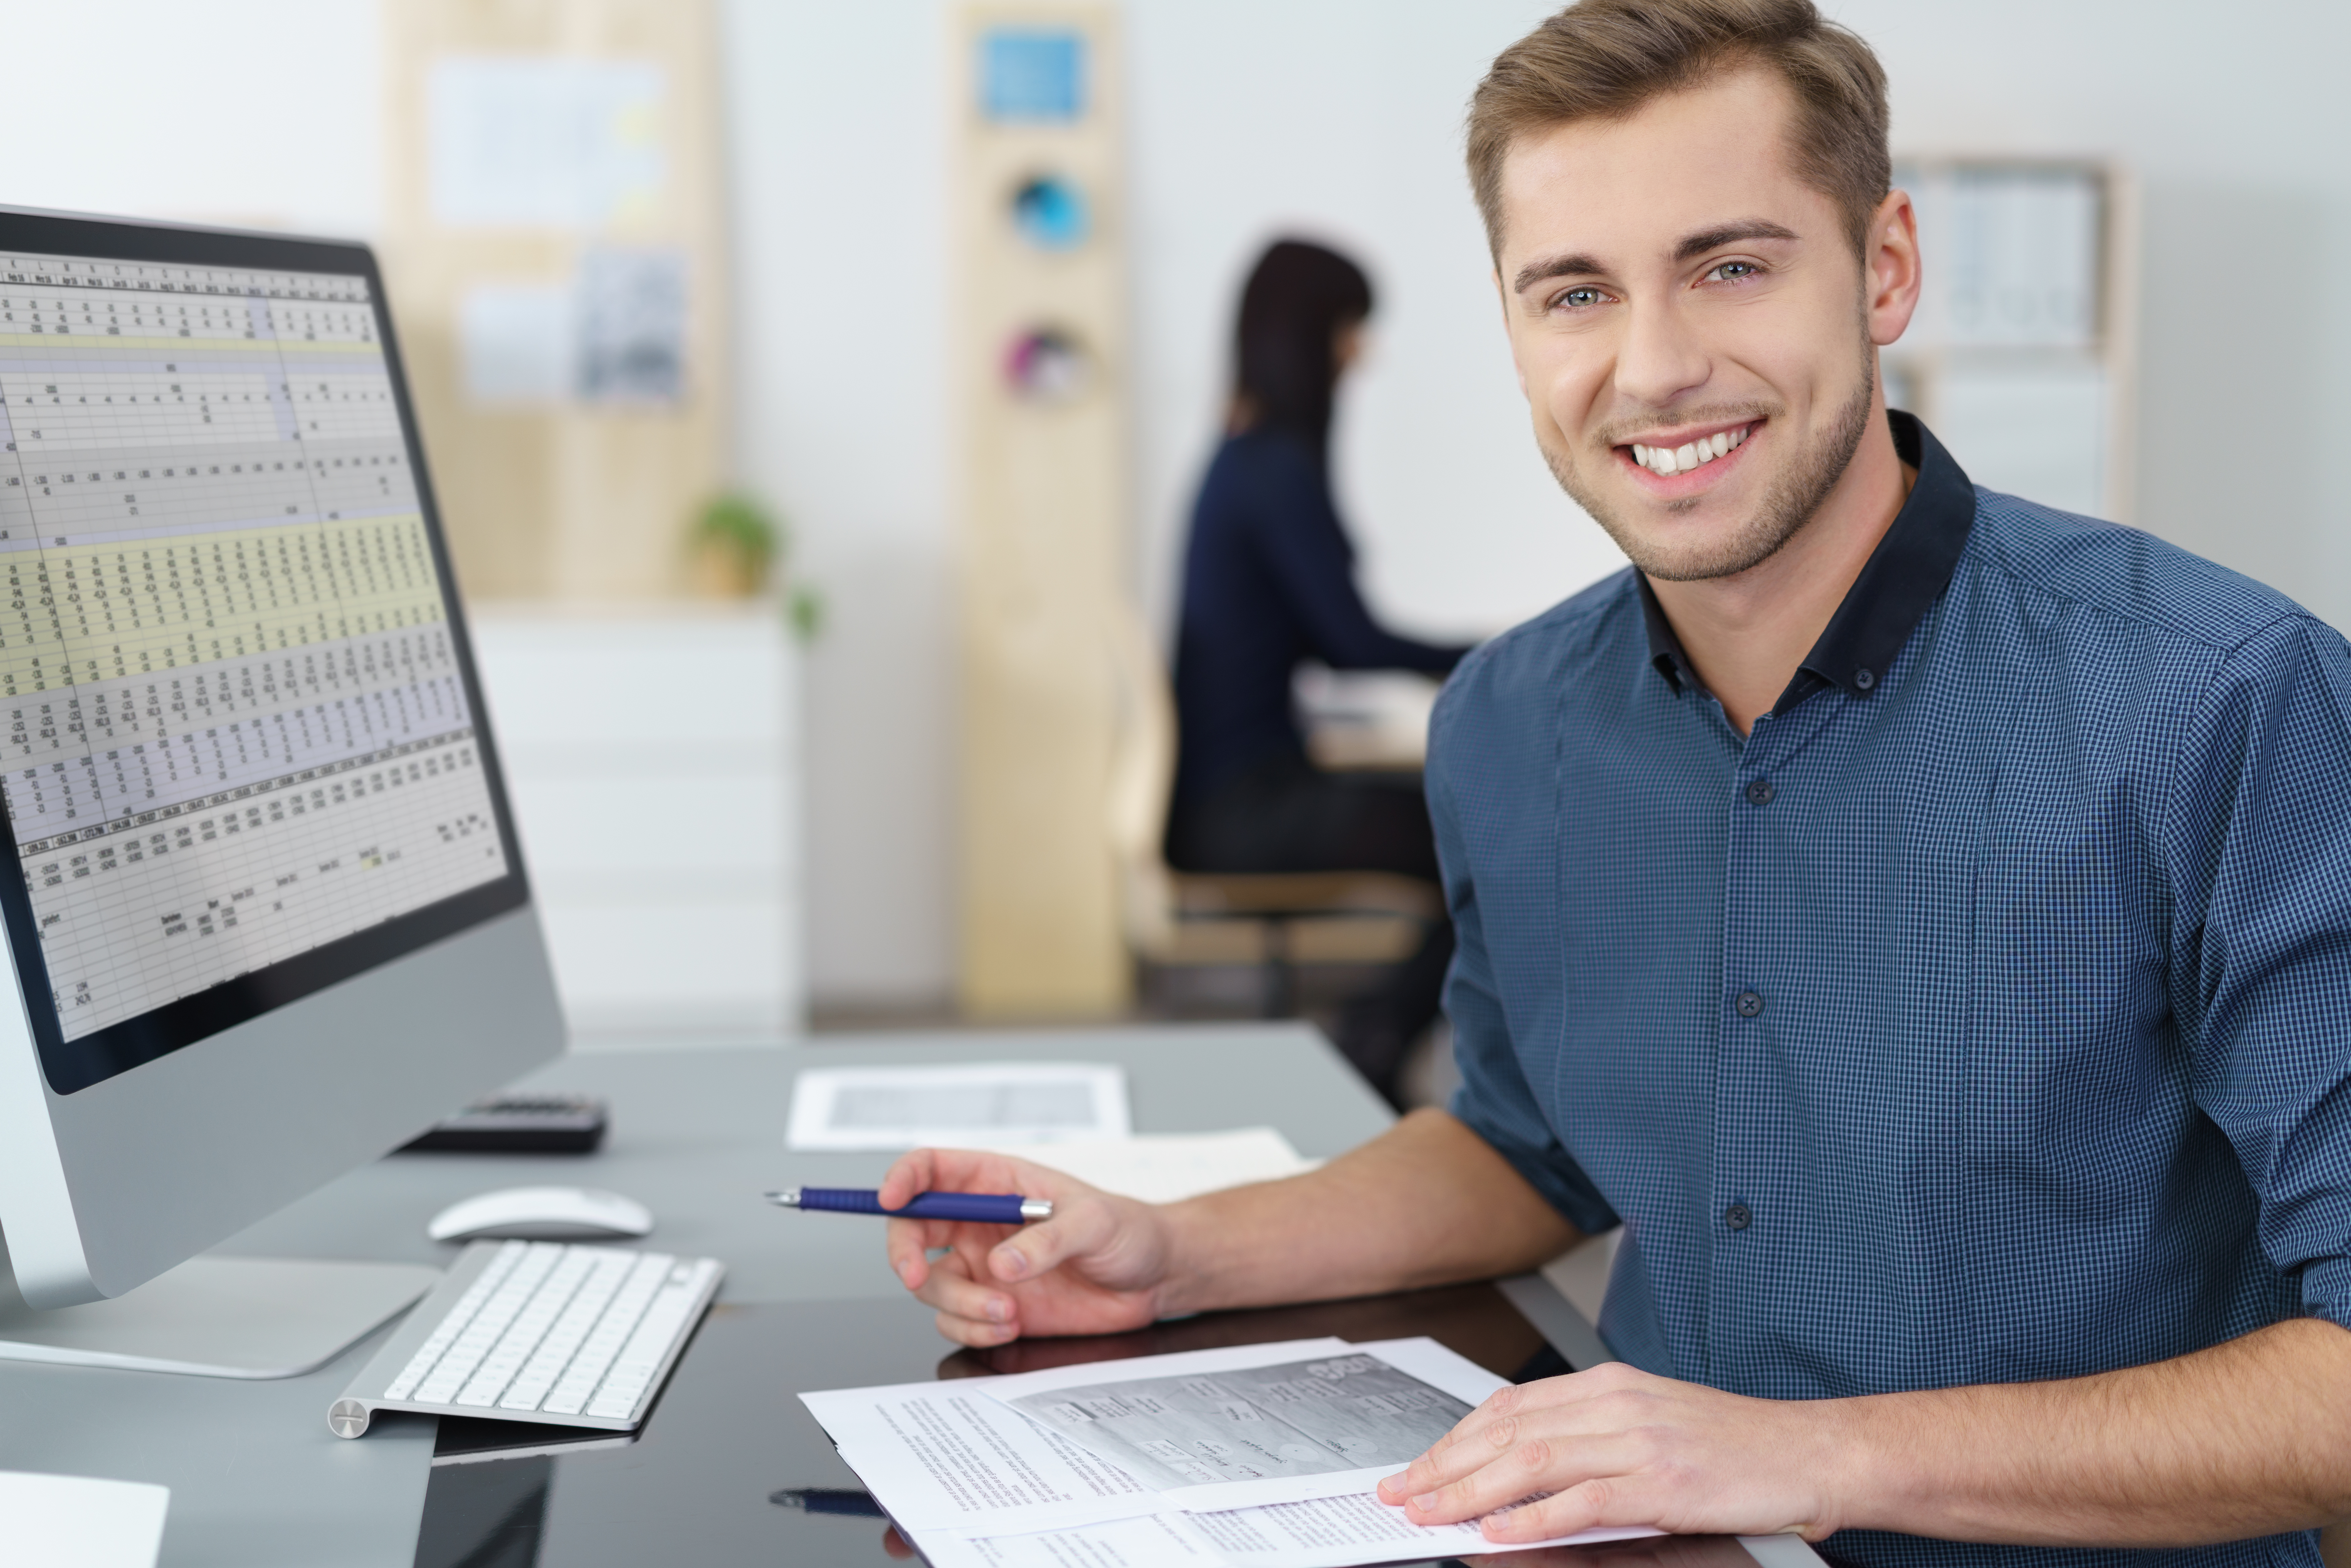 Ein Mann sitzt lächelnd an einem Schreibtisch mit Monitor und hält einen Stift in der Hand